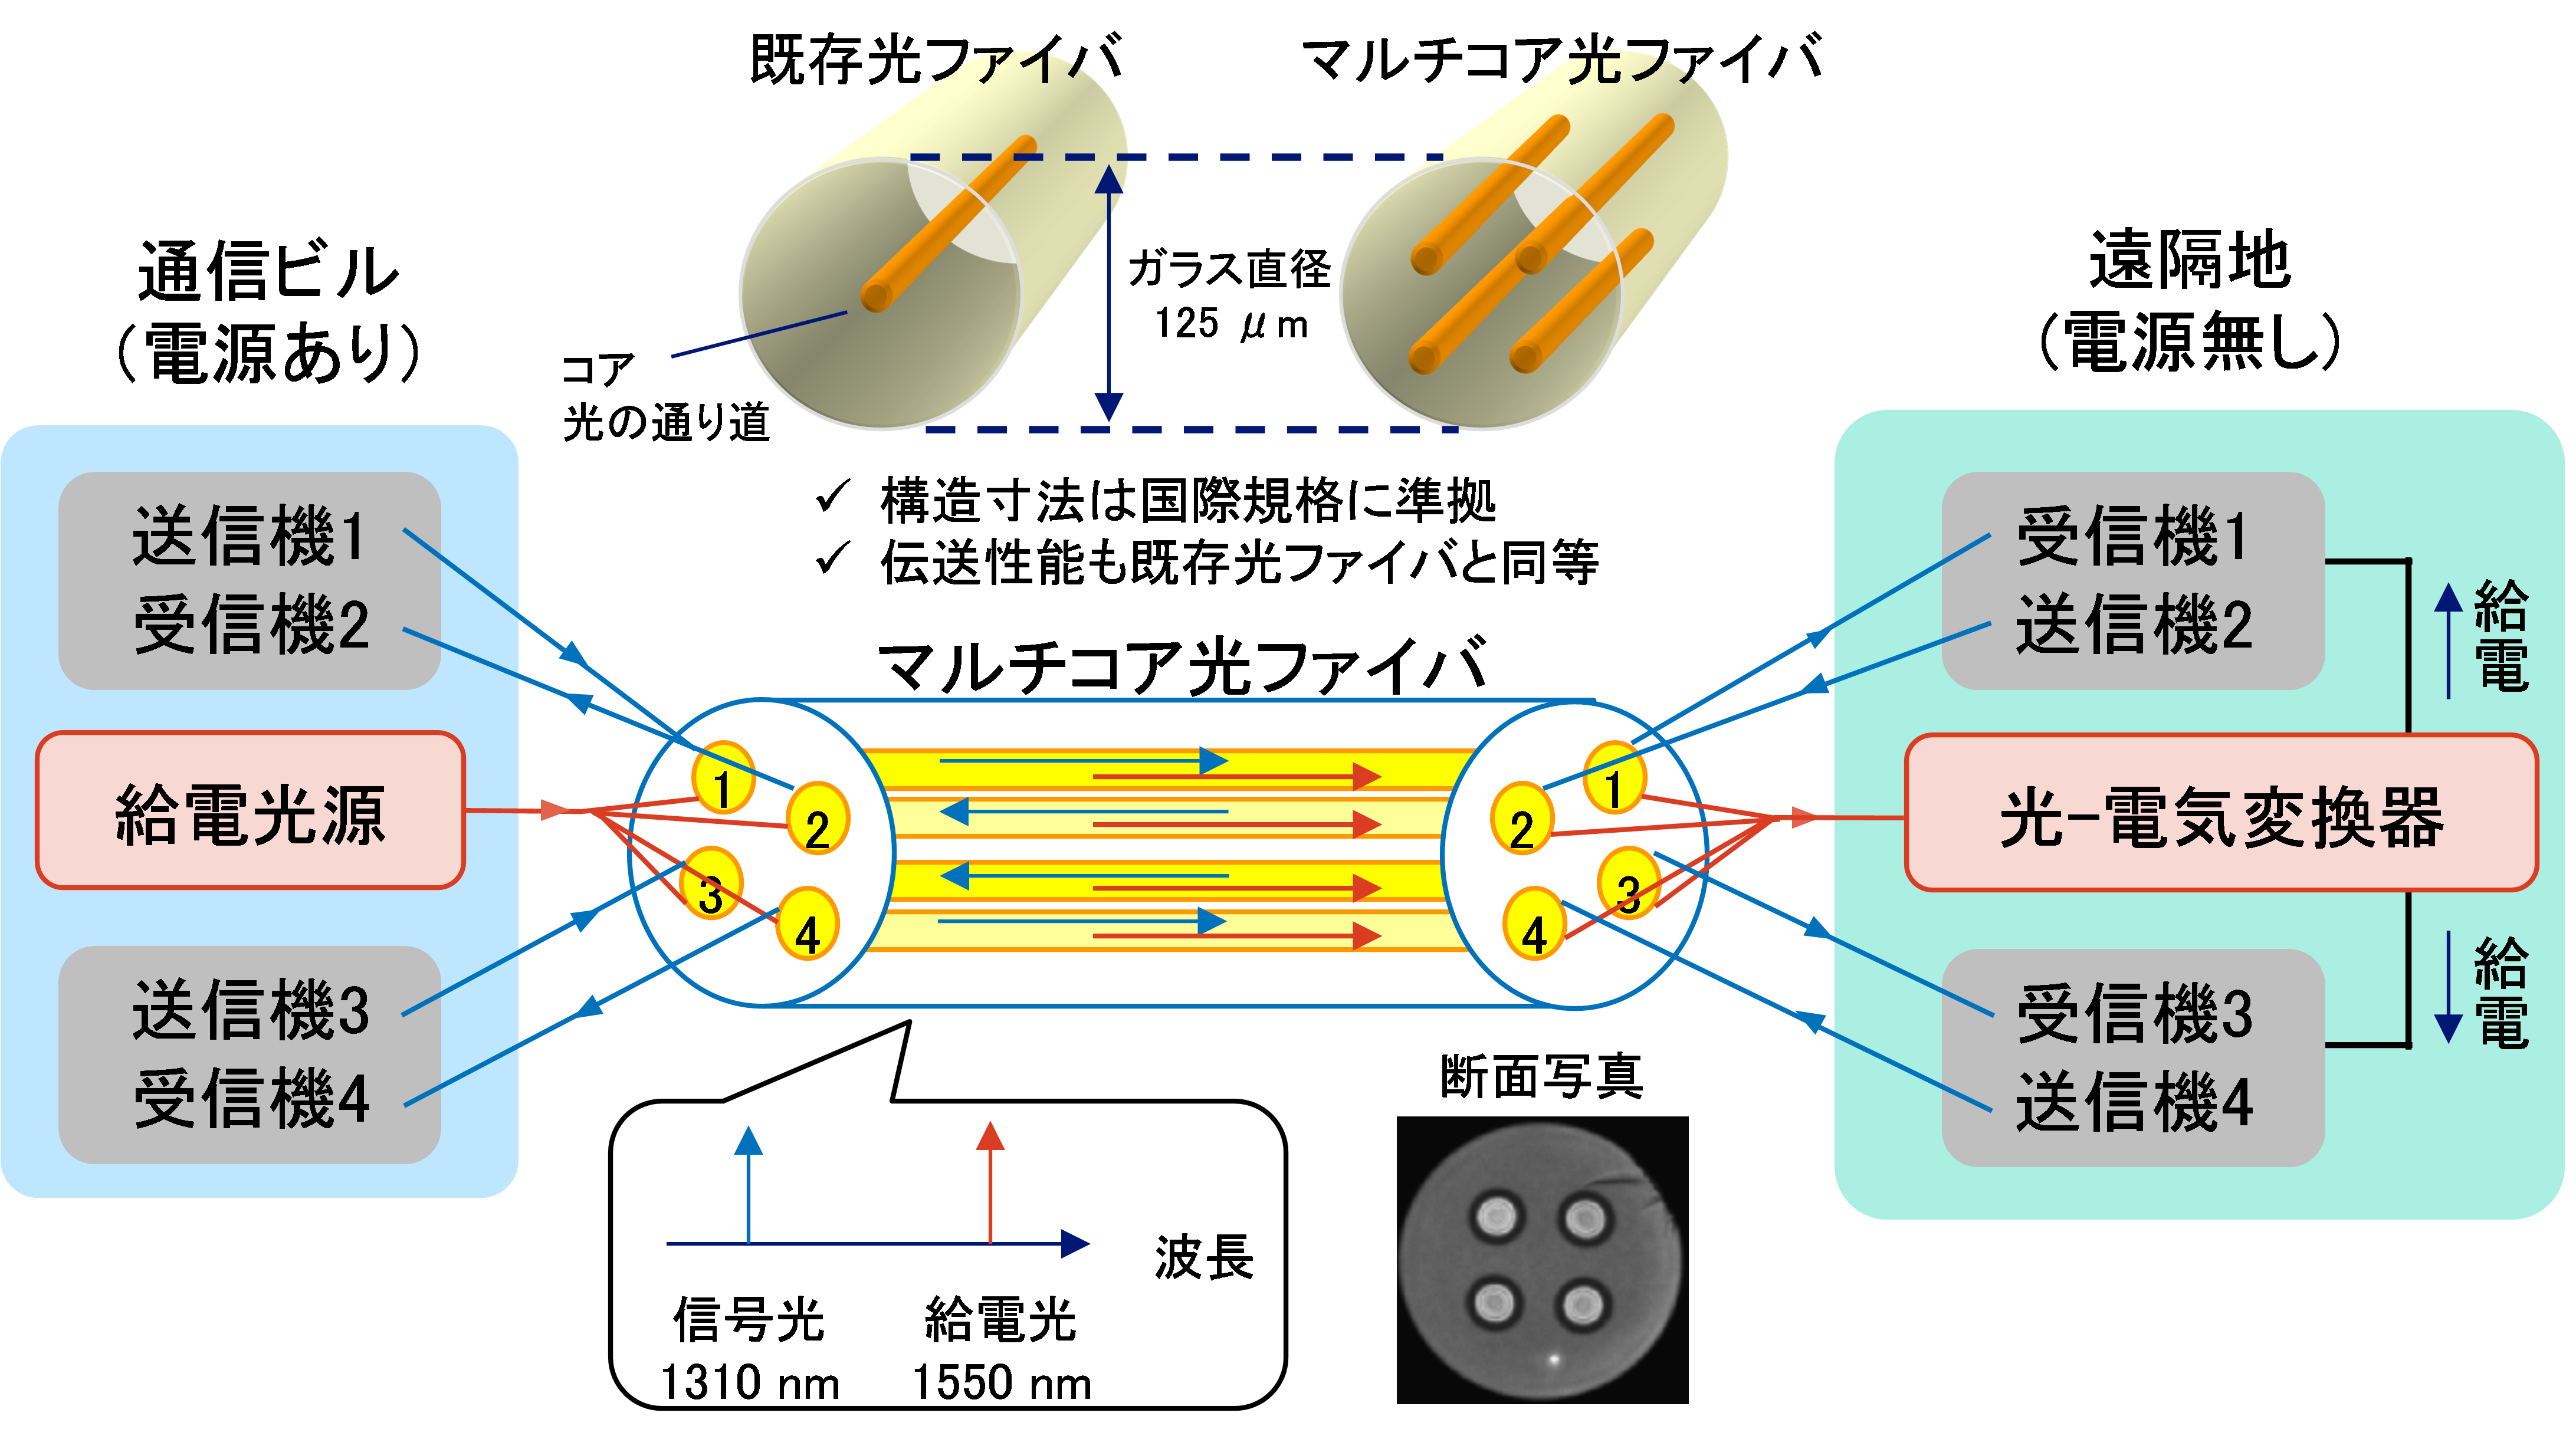 図1：マルチコア光ファイバを用いた光給電システムの概要